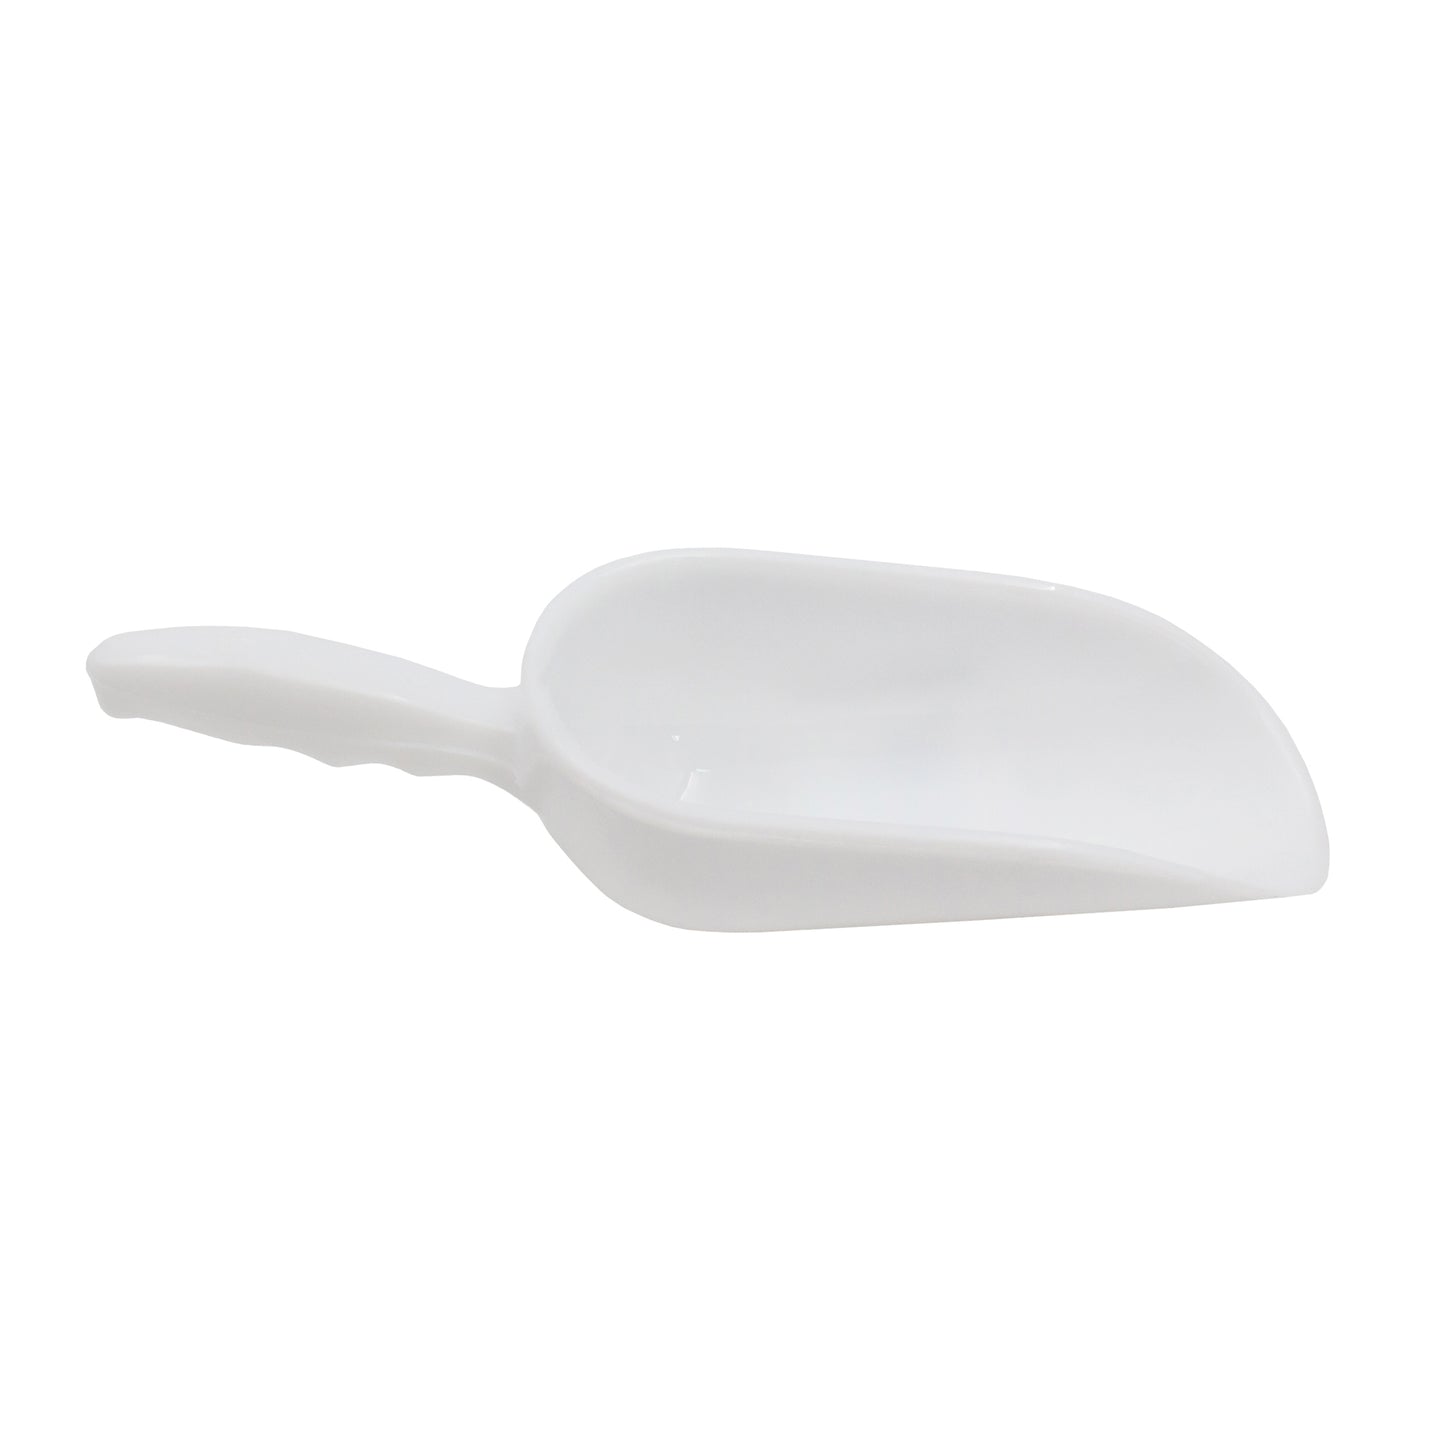 19cm white plastic food scoop - food grade plastic